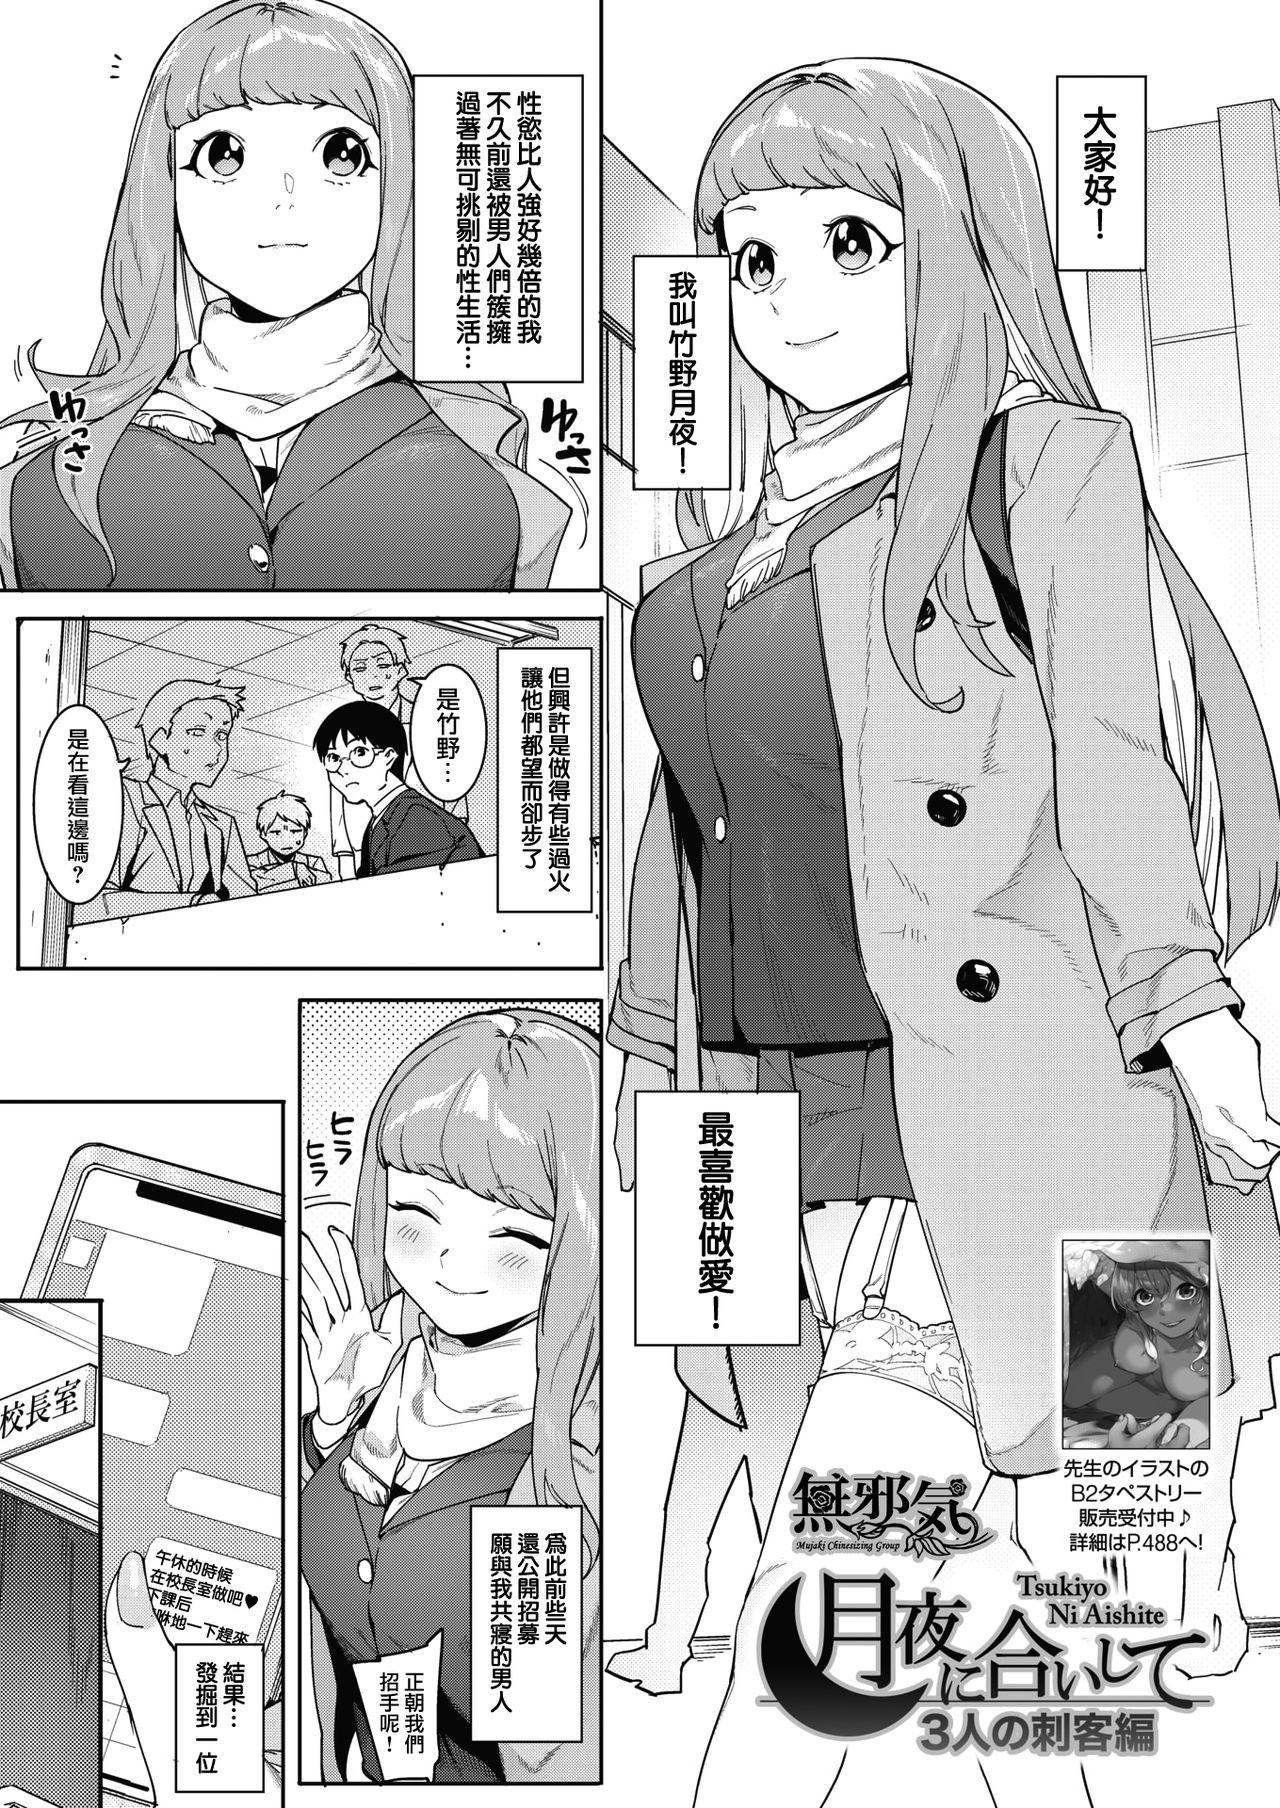 Selfie Tsukiyo Ni Aishite 3-nin no Shikaku Hen Strapon - Page 1